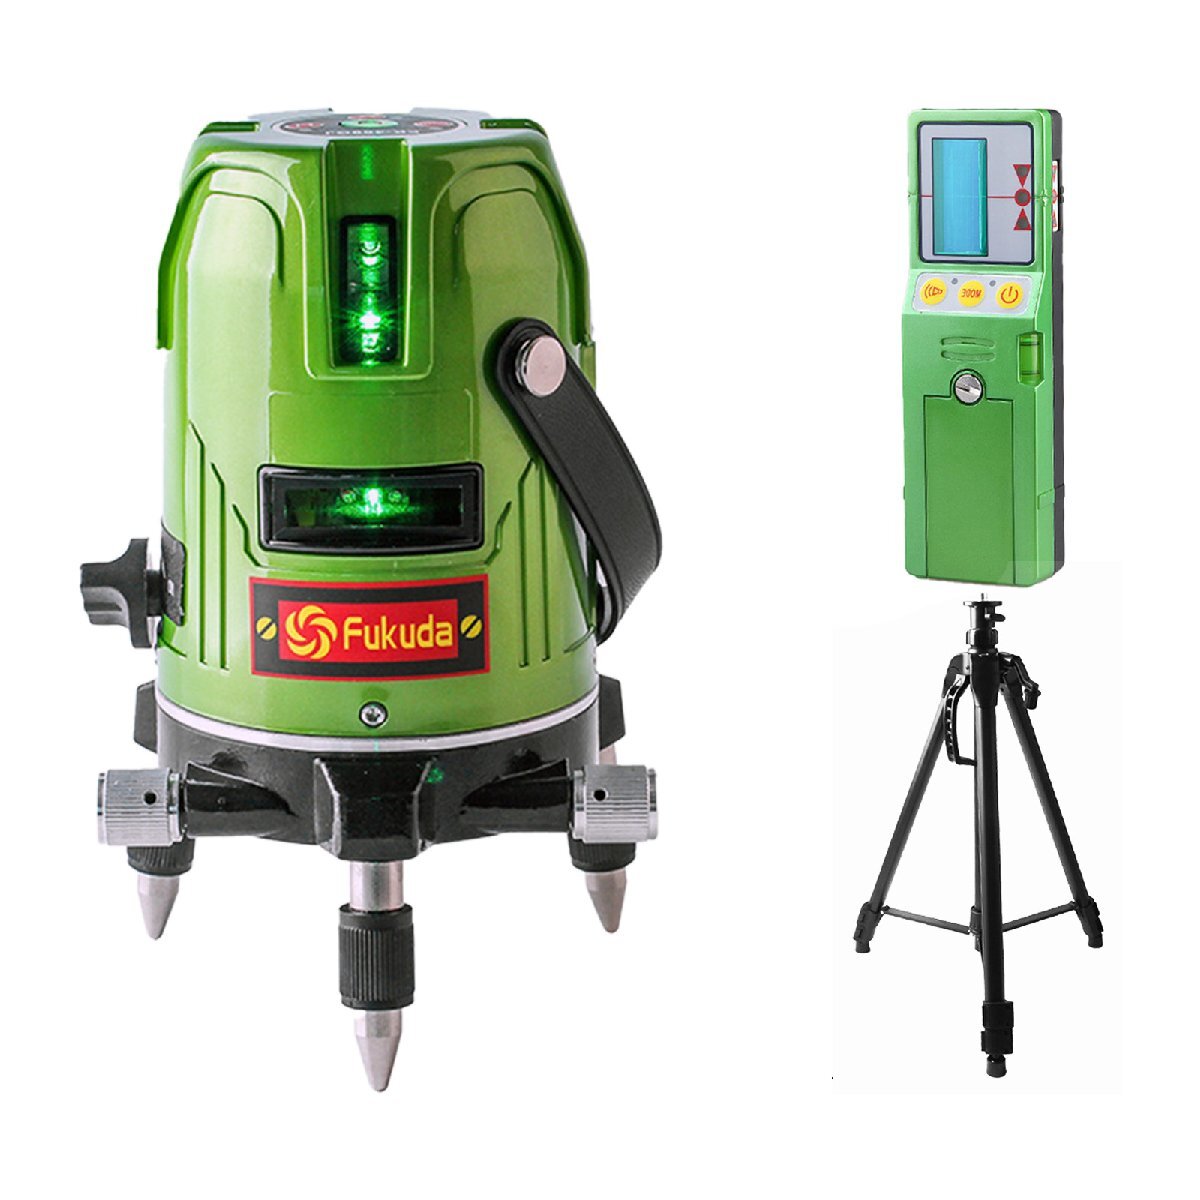 FUKADA 5ライン/グリーン レーザー墨出し器 レーザーレベル/フルライン測定器 /墨つぼ/地墨ポイ/本体+受光器+アルミ三脚(取手付タイプ)1.6m